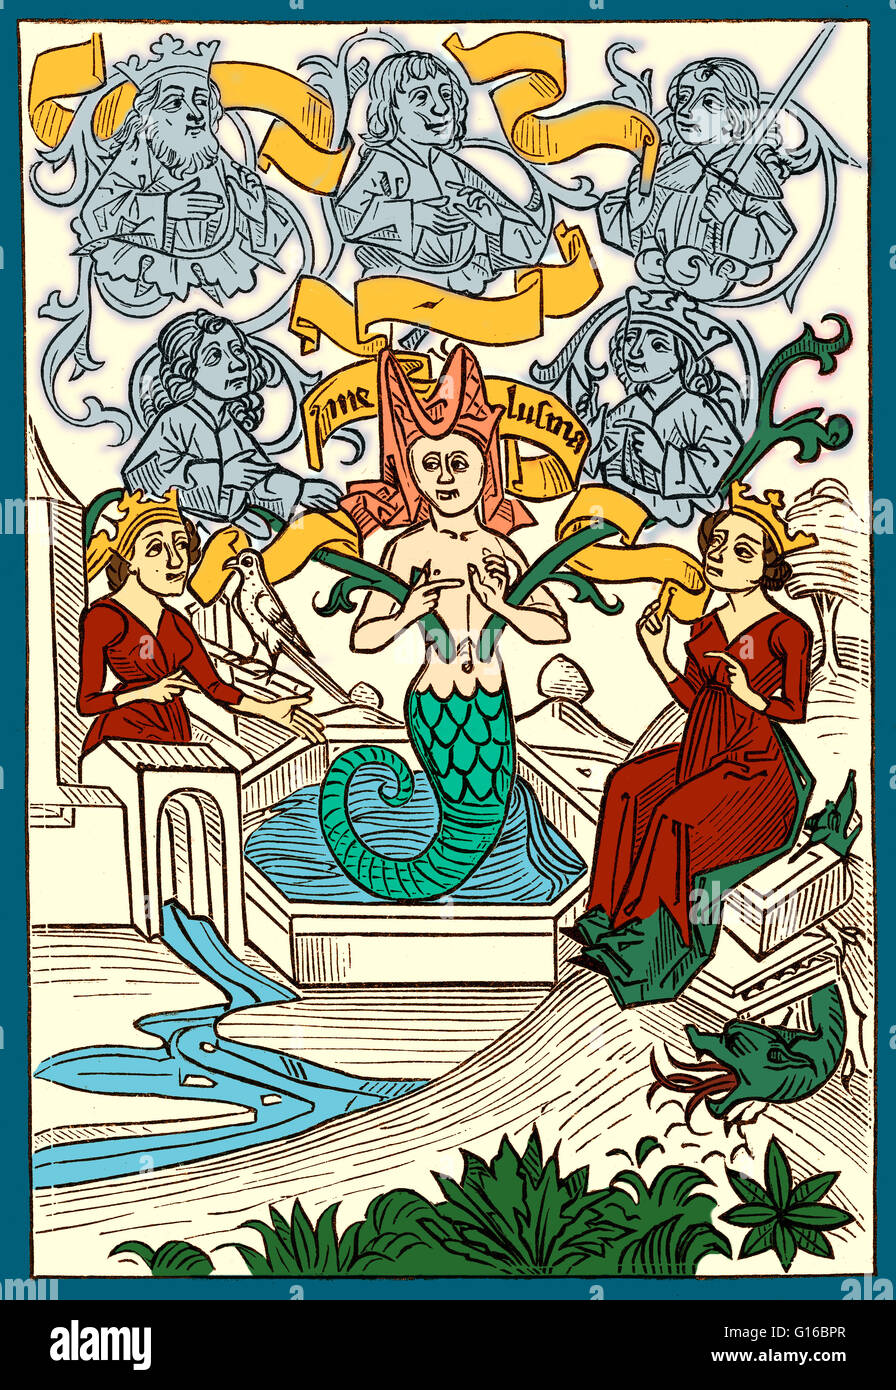 Farbverbesserung von Melusine, eine Figur der europäischen Legenden und Folklore, eine weibliche Geist des frischen Wassers in heiligen Quellen und Flüssen. Melusine ist in der Regel als eine Frau dargestellt, die eine Schlange oder ein Fisch von der Taille abwärts (ähnlich wie eine Meerjungfrau) ist. Sie ist al Stockfoto